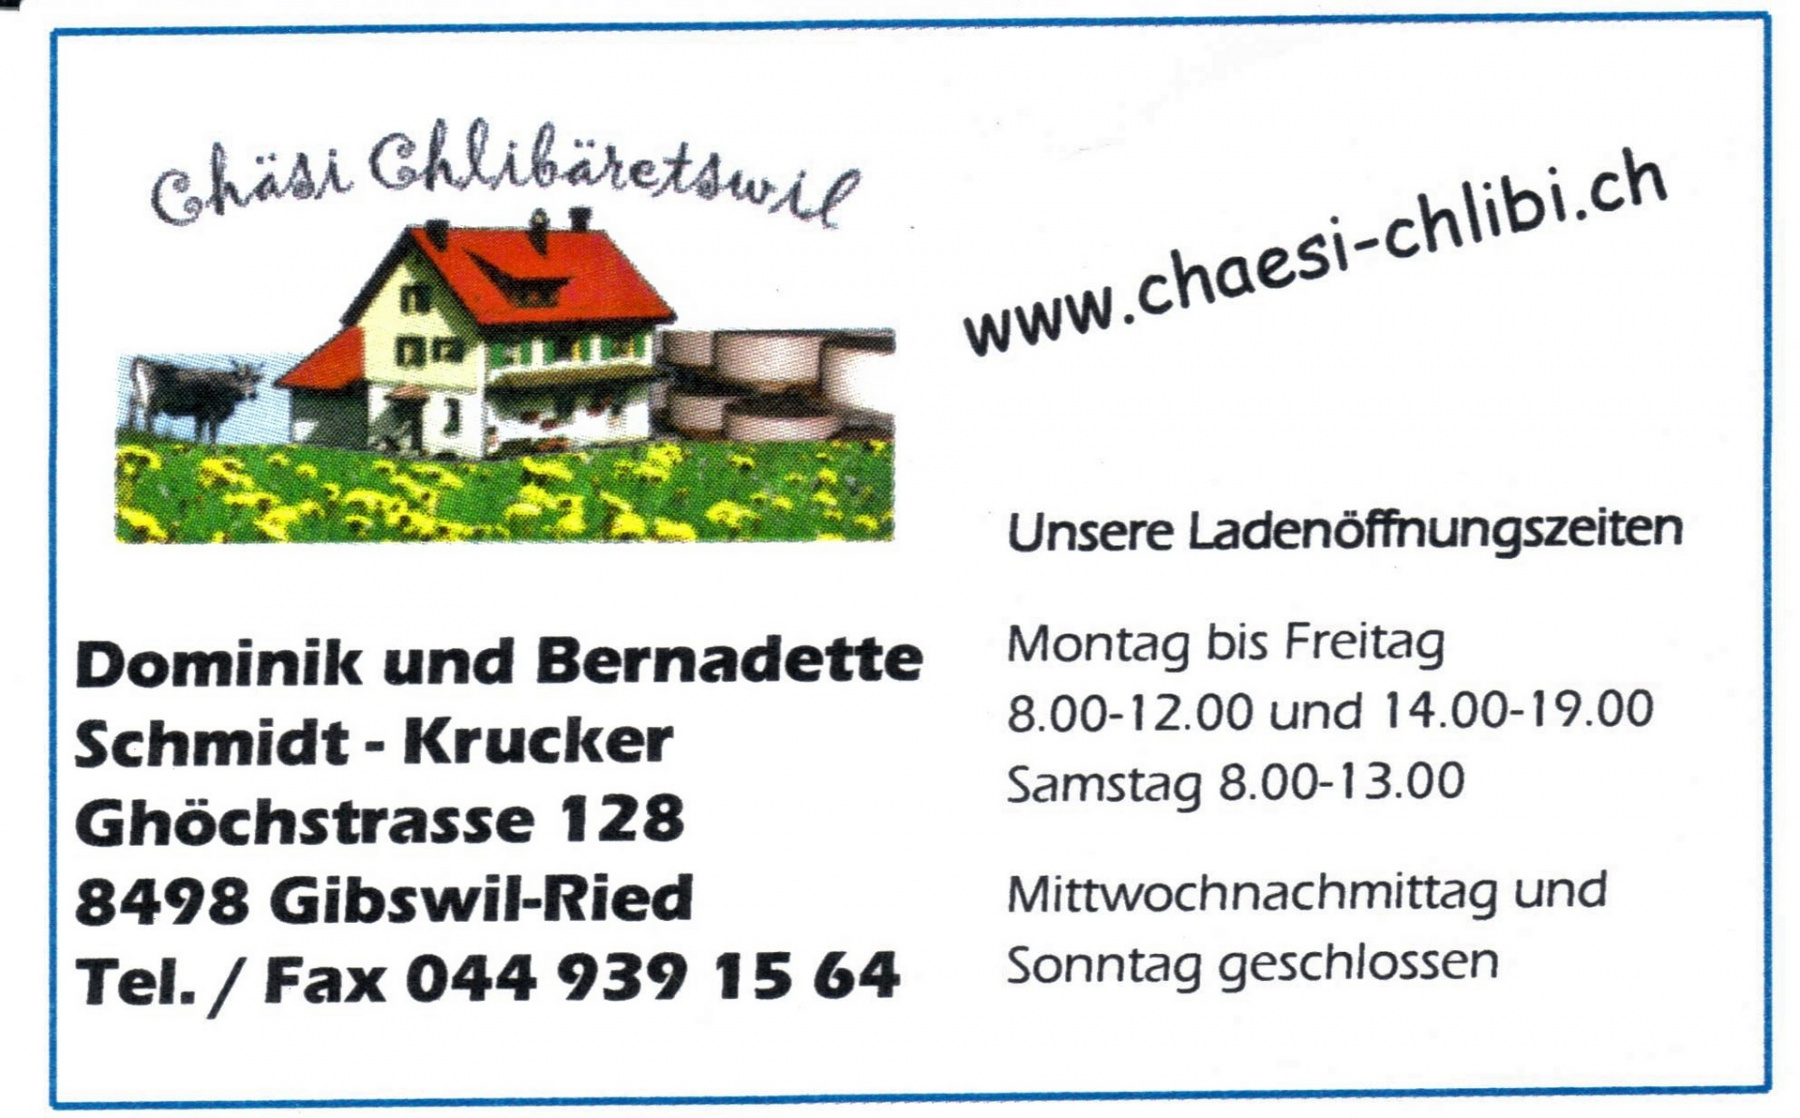 Käserei Kleinbäretswil, Sohn Dominik übernimmt mit seiner Frau Bernadette die Käserei. Sie geben ihr einen neuen Namen: Chäsi Chlibäretswil (Chäsi-Chlibi).